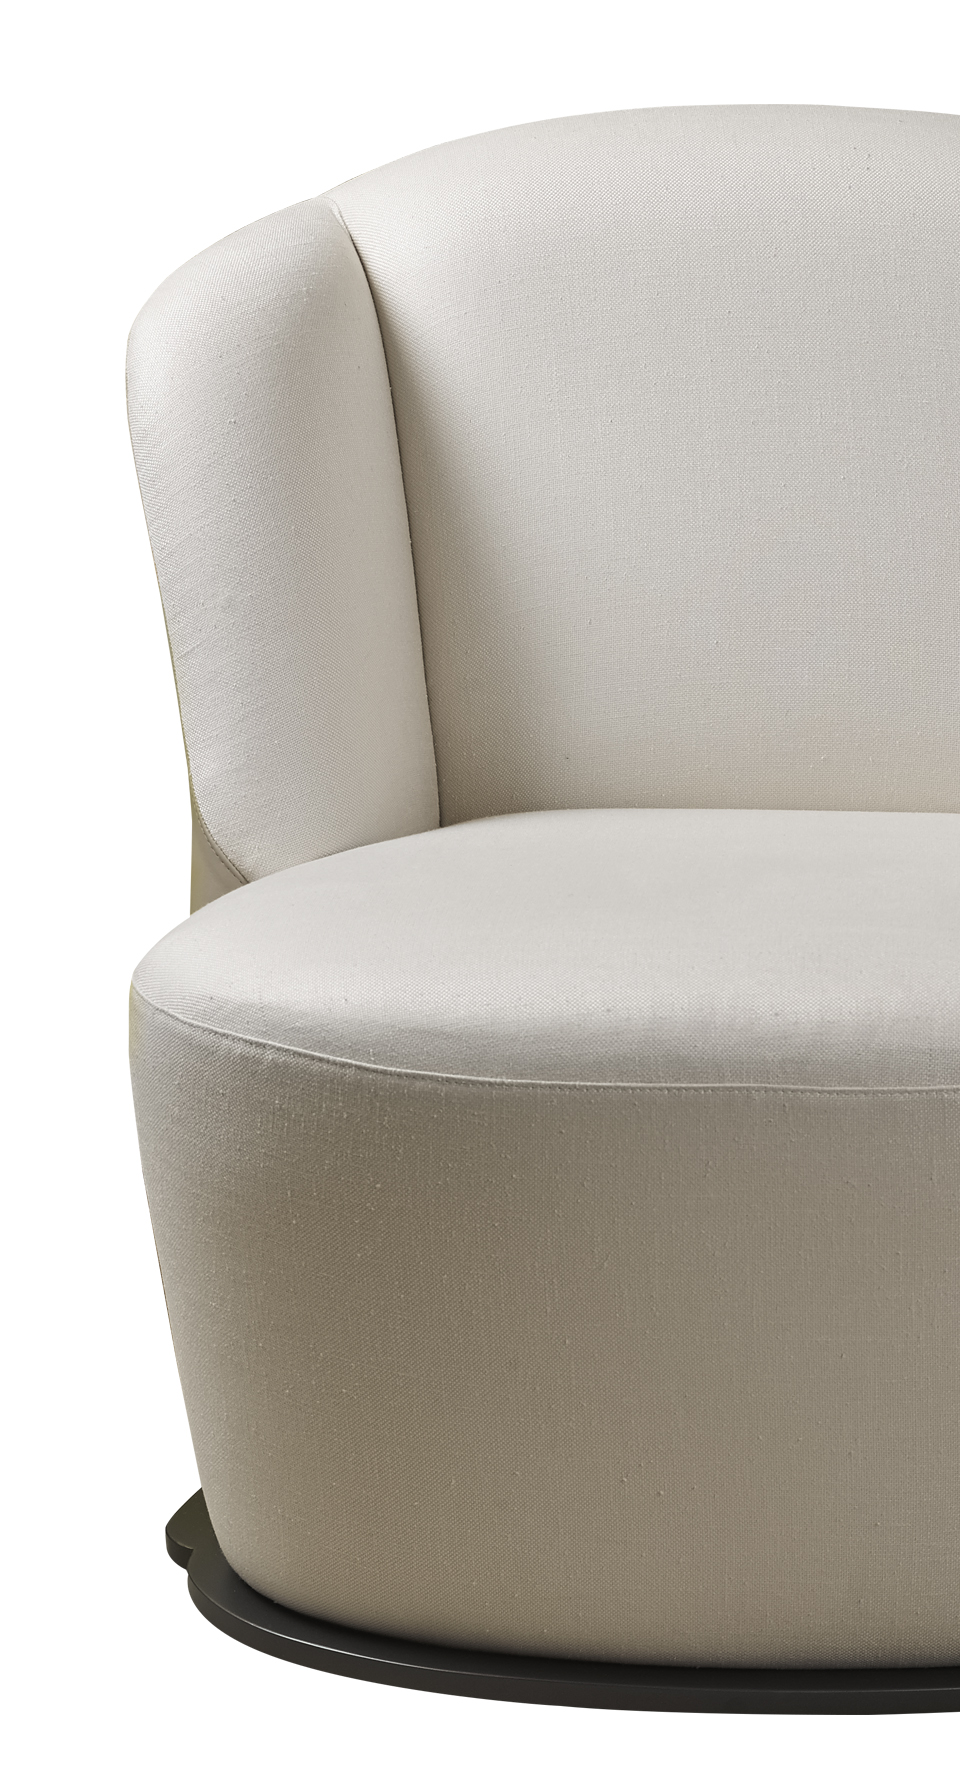 „Rosaspina“ ist ein Sessel mit Bezug aus Stoff und Leder und einem Metallsockel, aus dem Katalog von Promemoria | Promemoria